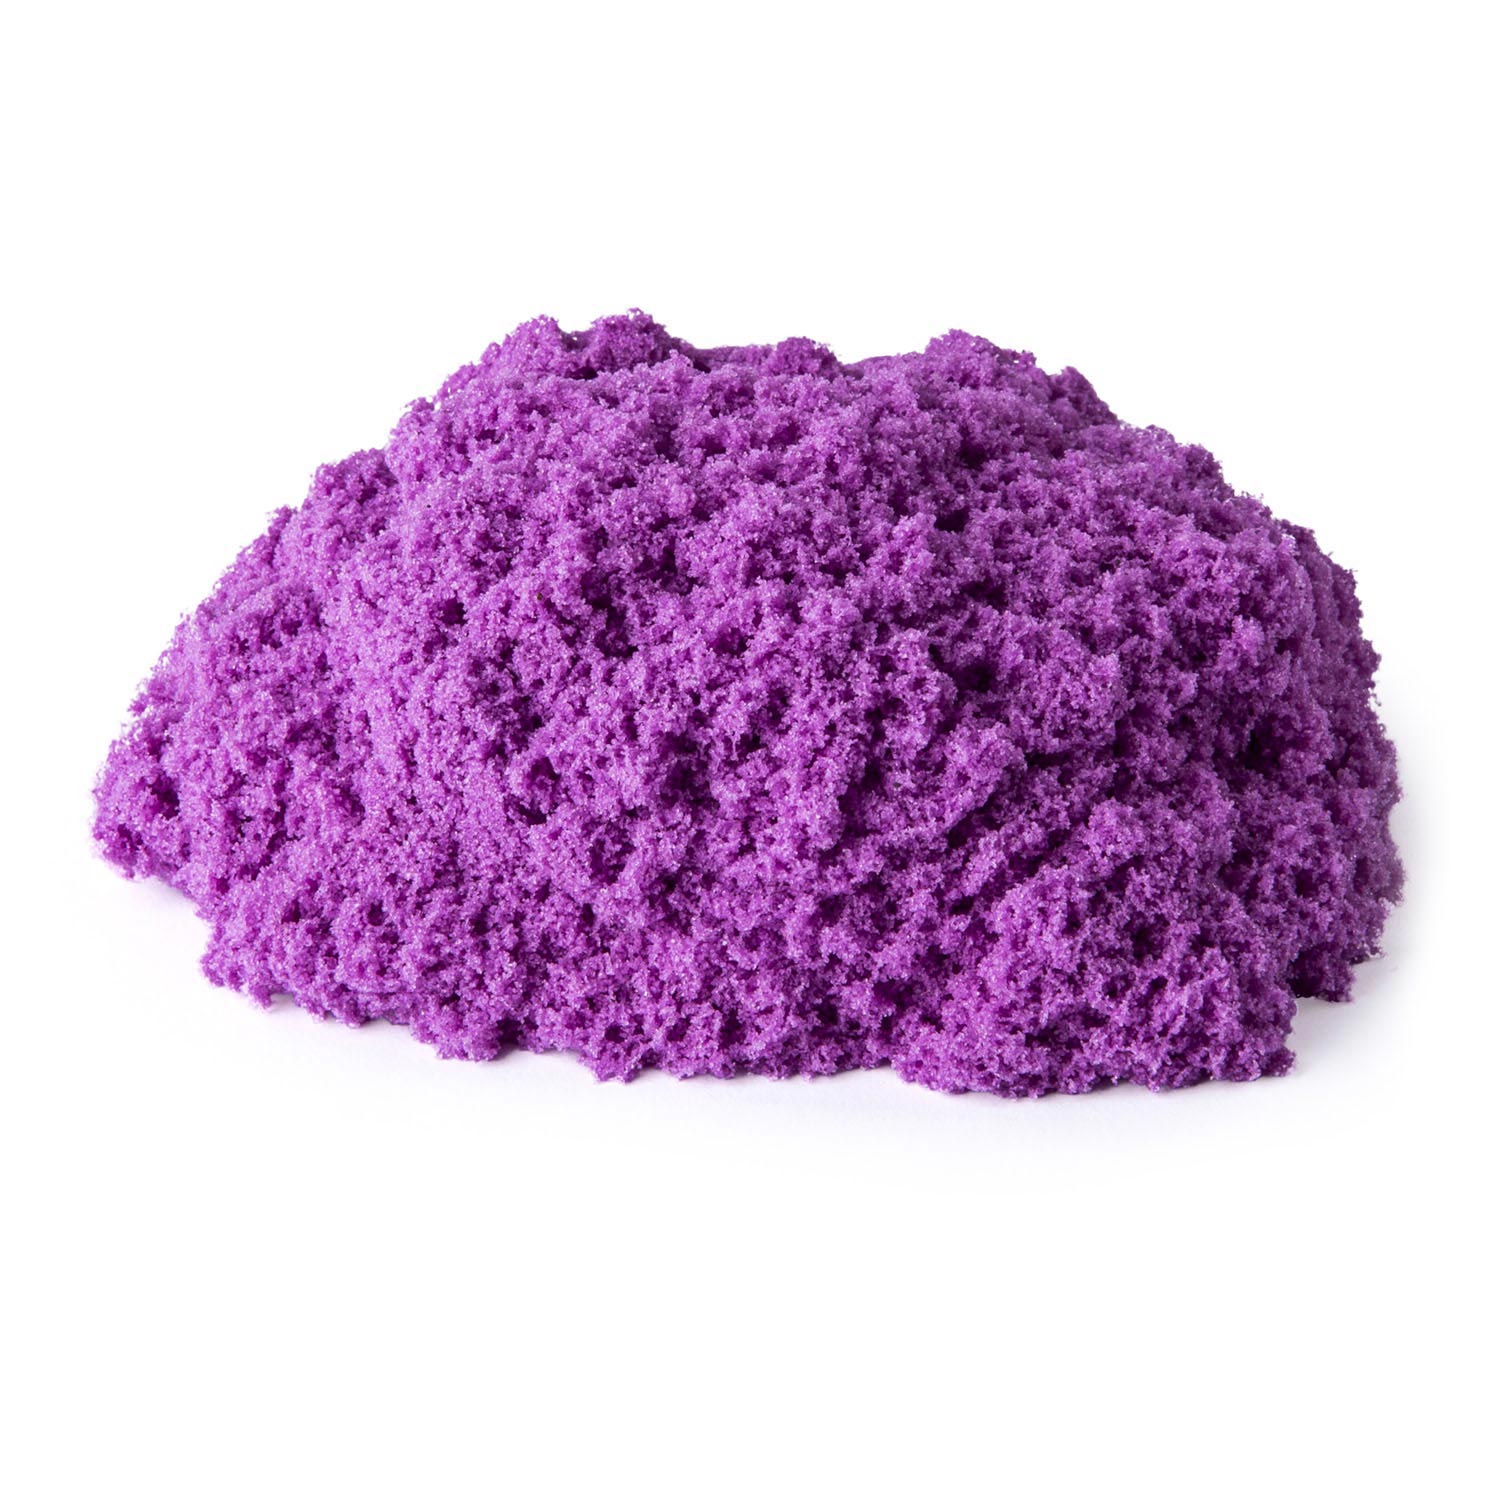 Kinetic Sand - Violet, 907gr.